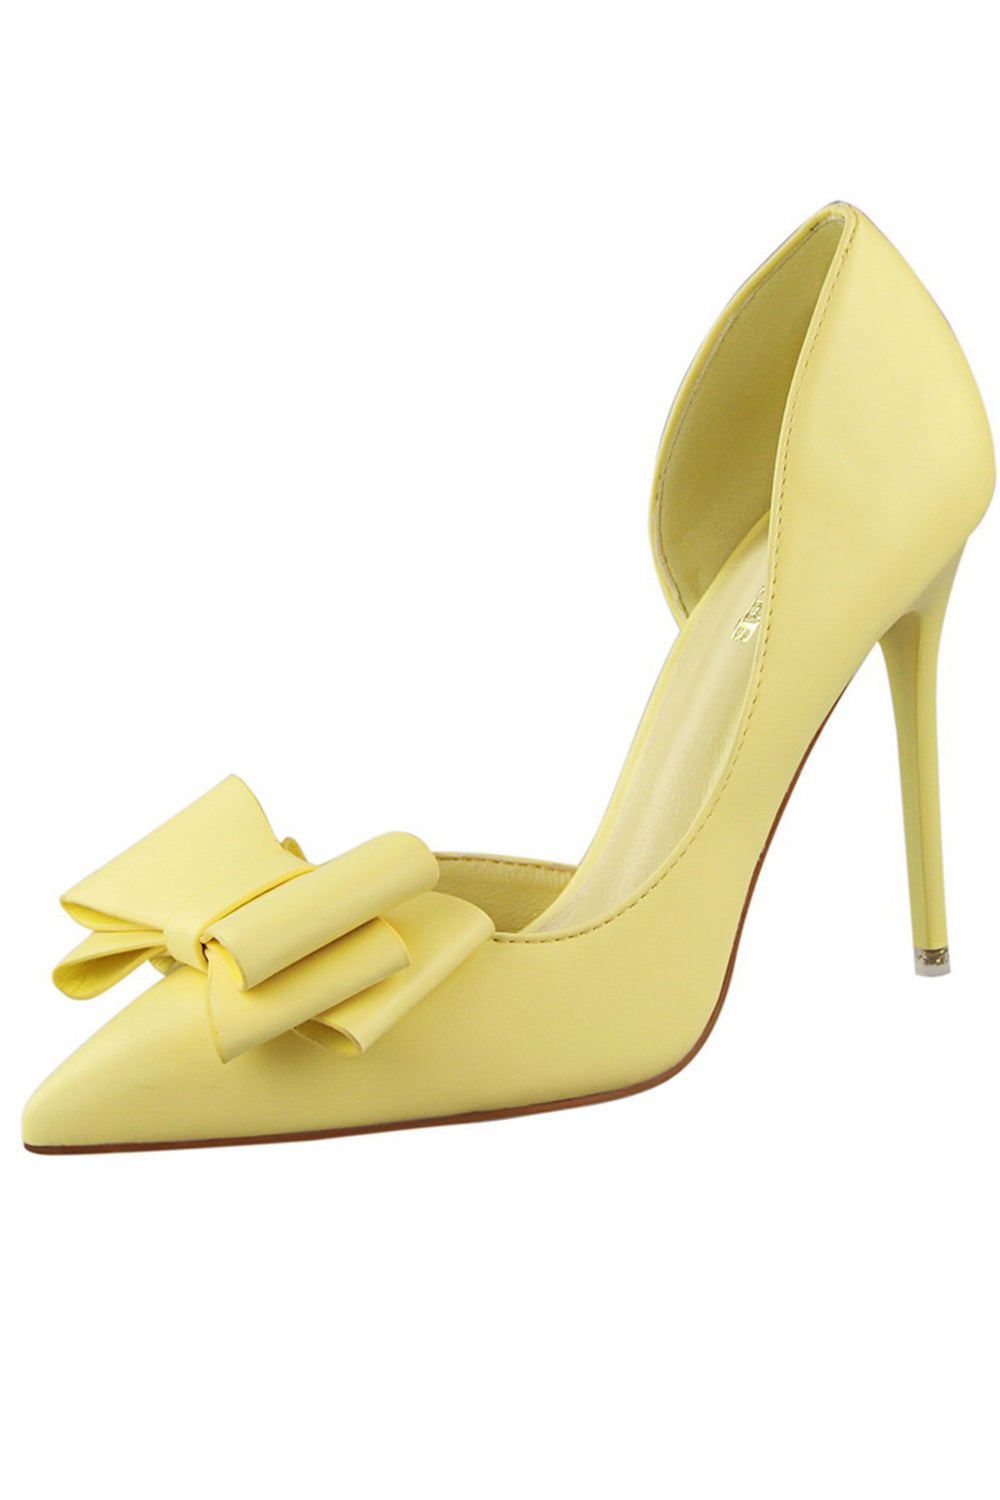 Baespice Women Yellow Heels - Buy Baespice Women Yellow Heels Online at  Best Price - Shop Online for Footwears in India | Flipkart.com